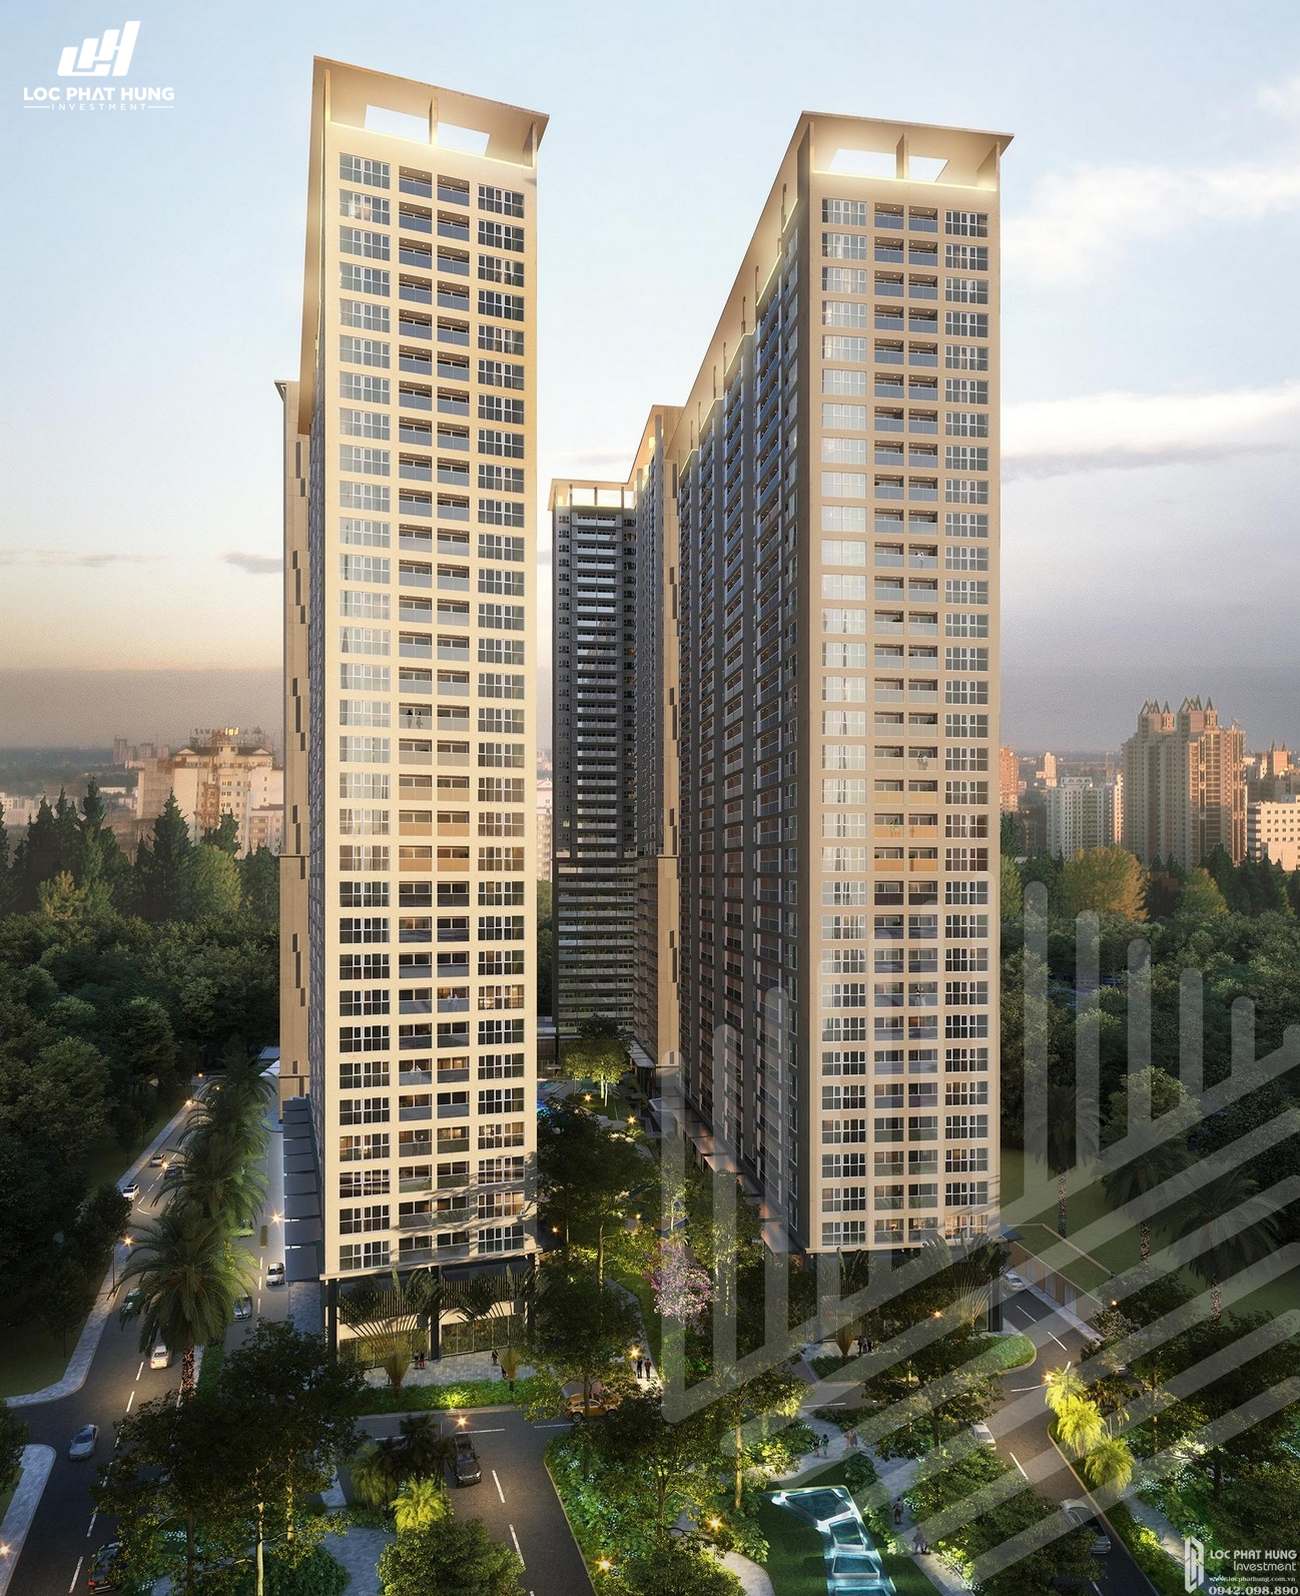 Phối cảnh tổng thể dự án căn hộ chung cư Anderson Park Thuận An Đường Quốc lộ 13 chủ đầu tư Quốc Cường Gia Lai